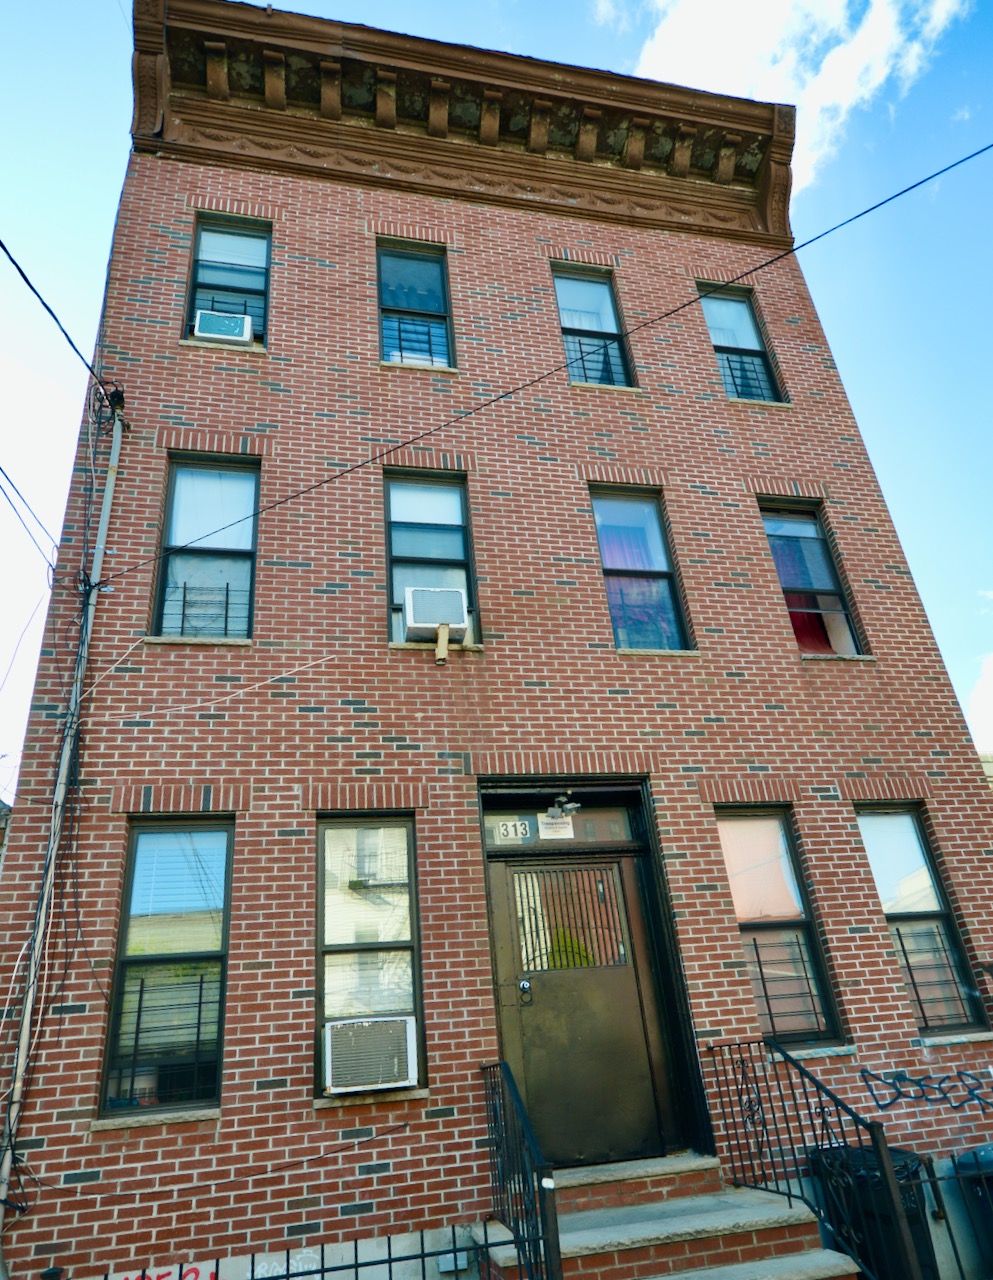 313 Stockholm Street Building, Bushwick, Brooklyn, New York - 12 Bedrooms  
6 Bathrooms  
24 Rooms - 